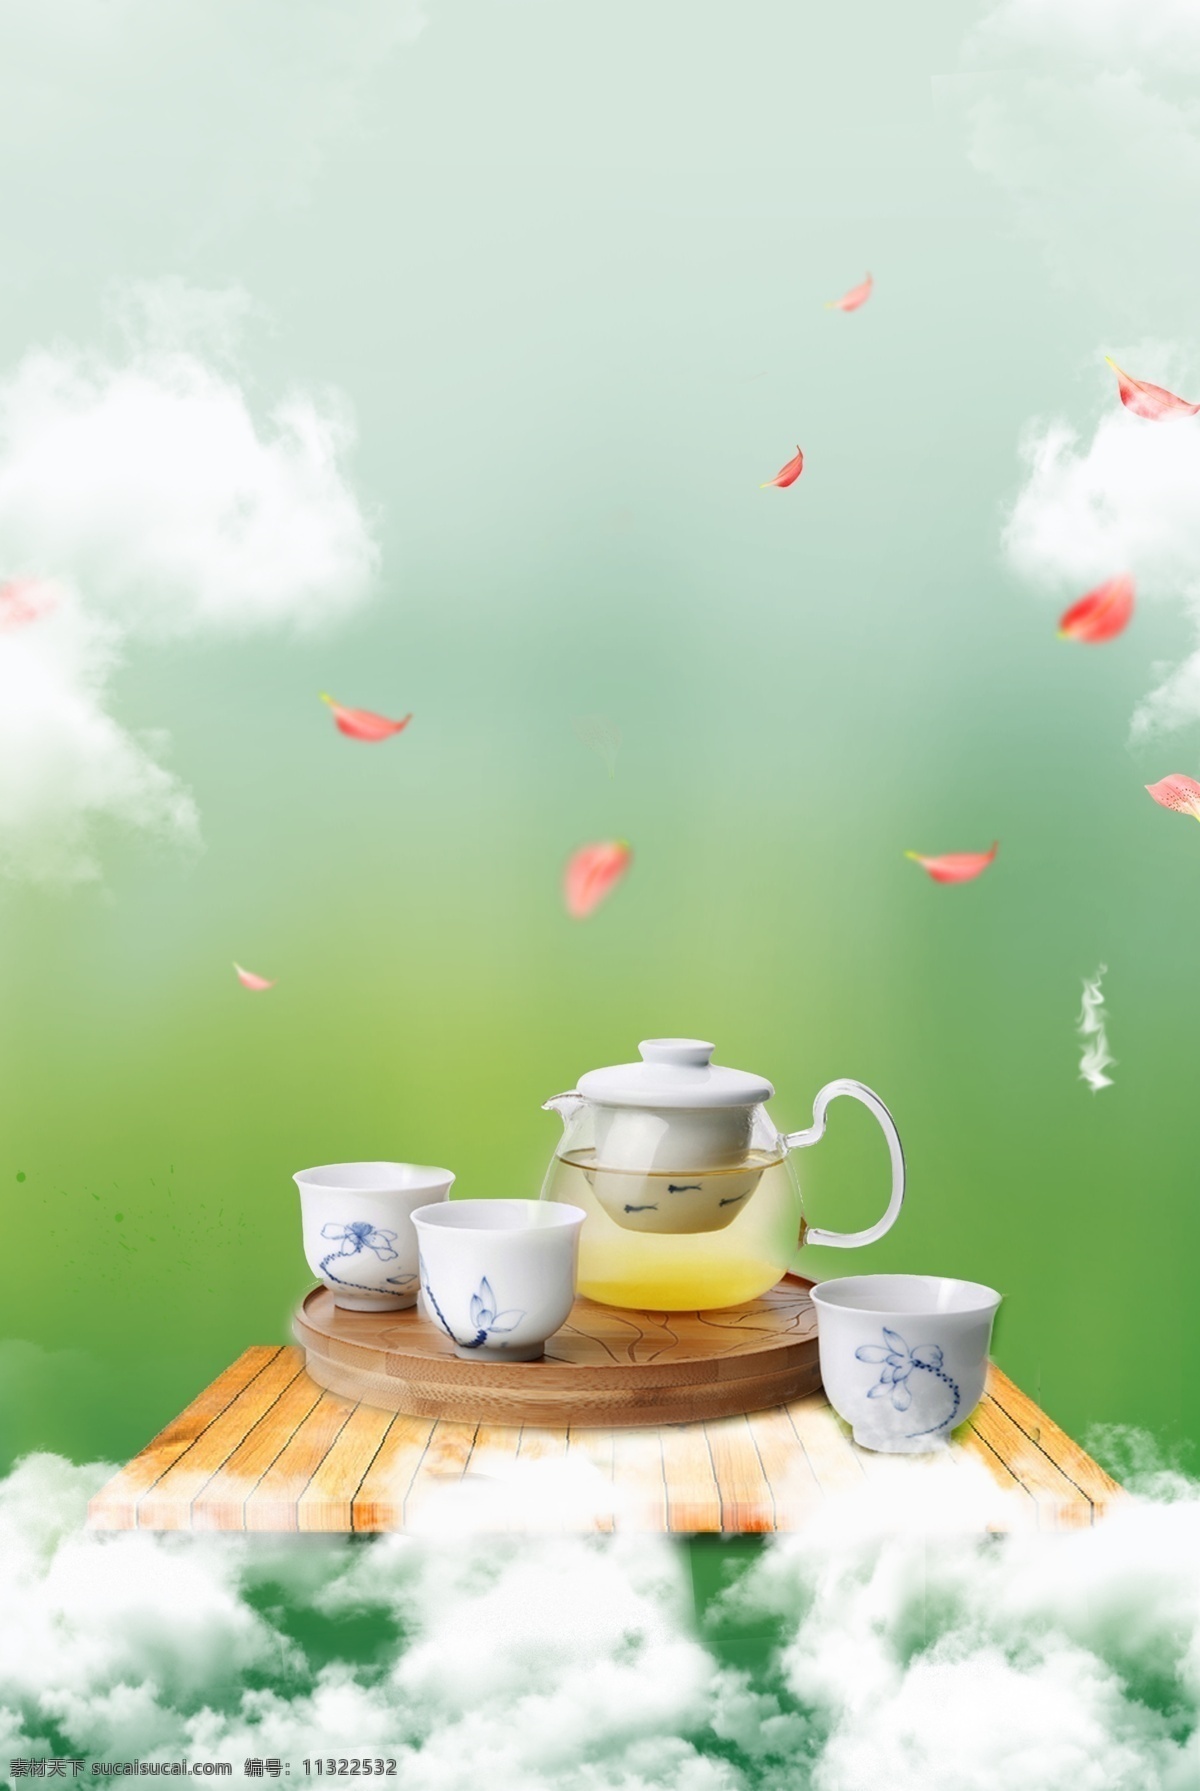 绿色 清新 自然 茶具 广告 海报 绿色请 清新自然 茶叶背景 茶具背景 茶文化 粉色花瓣 绿茶背景 春茶节 广告海报设计 海报背景